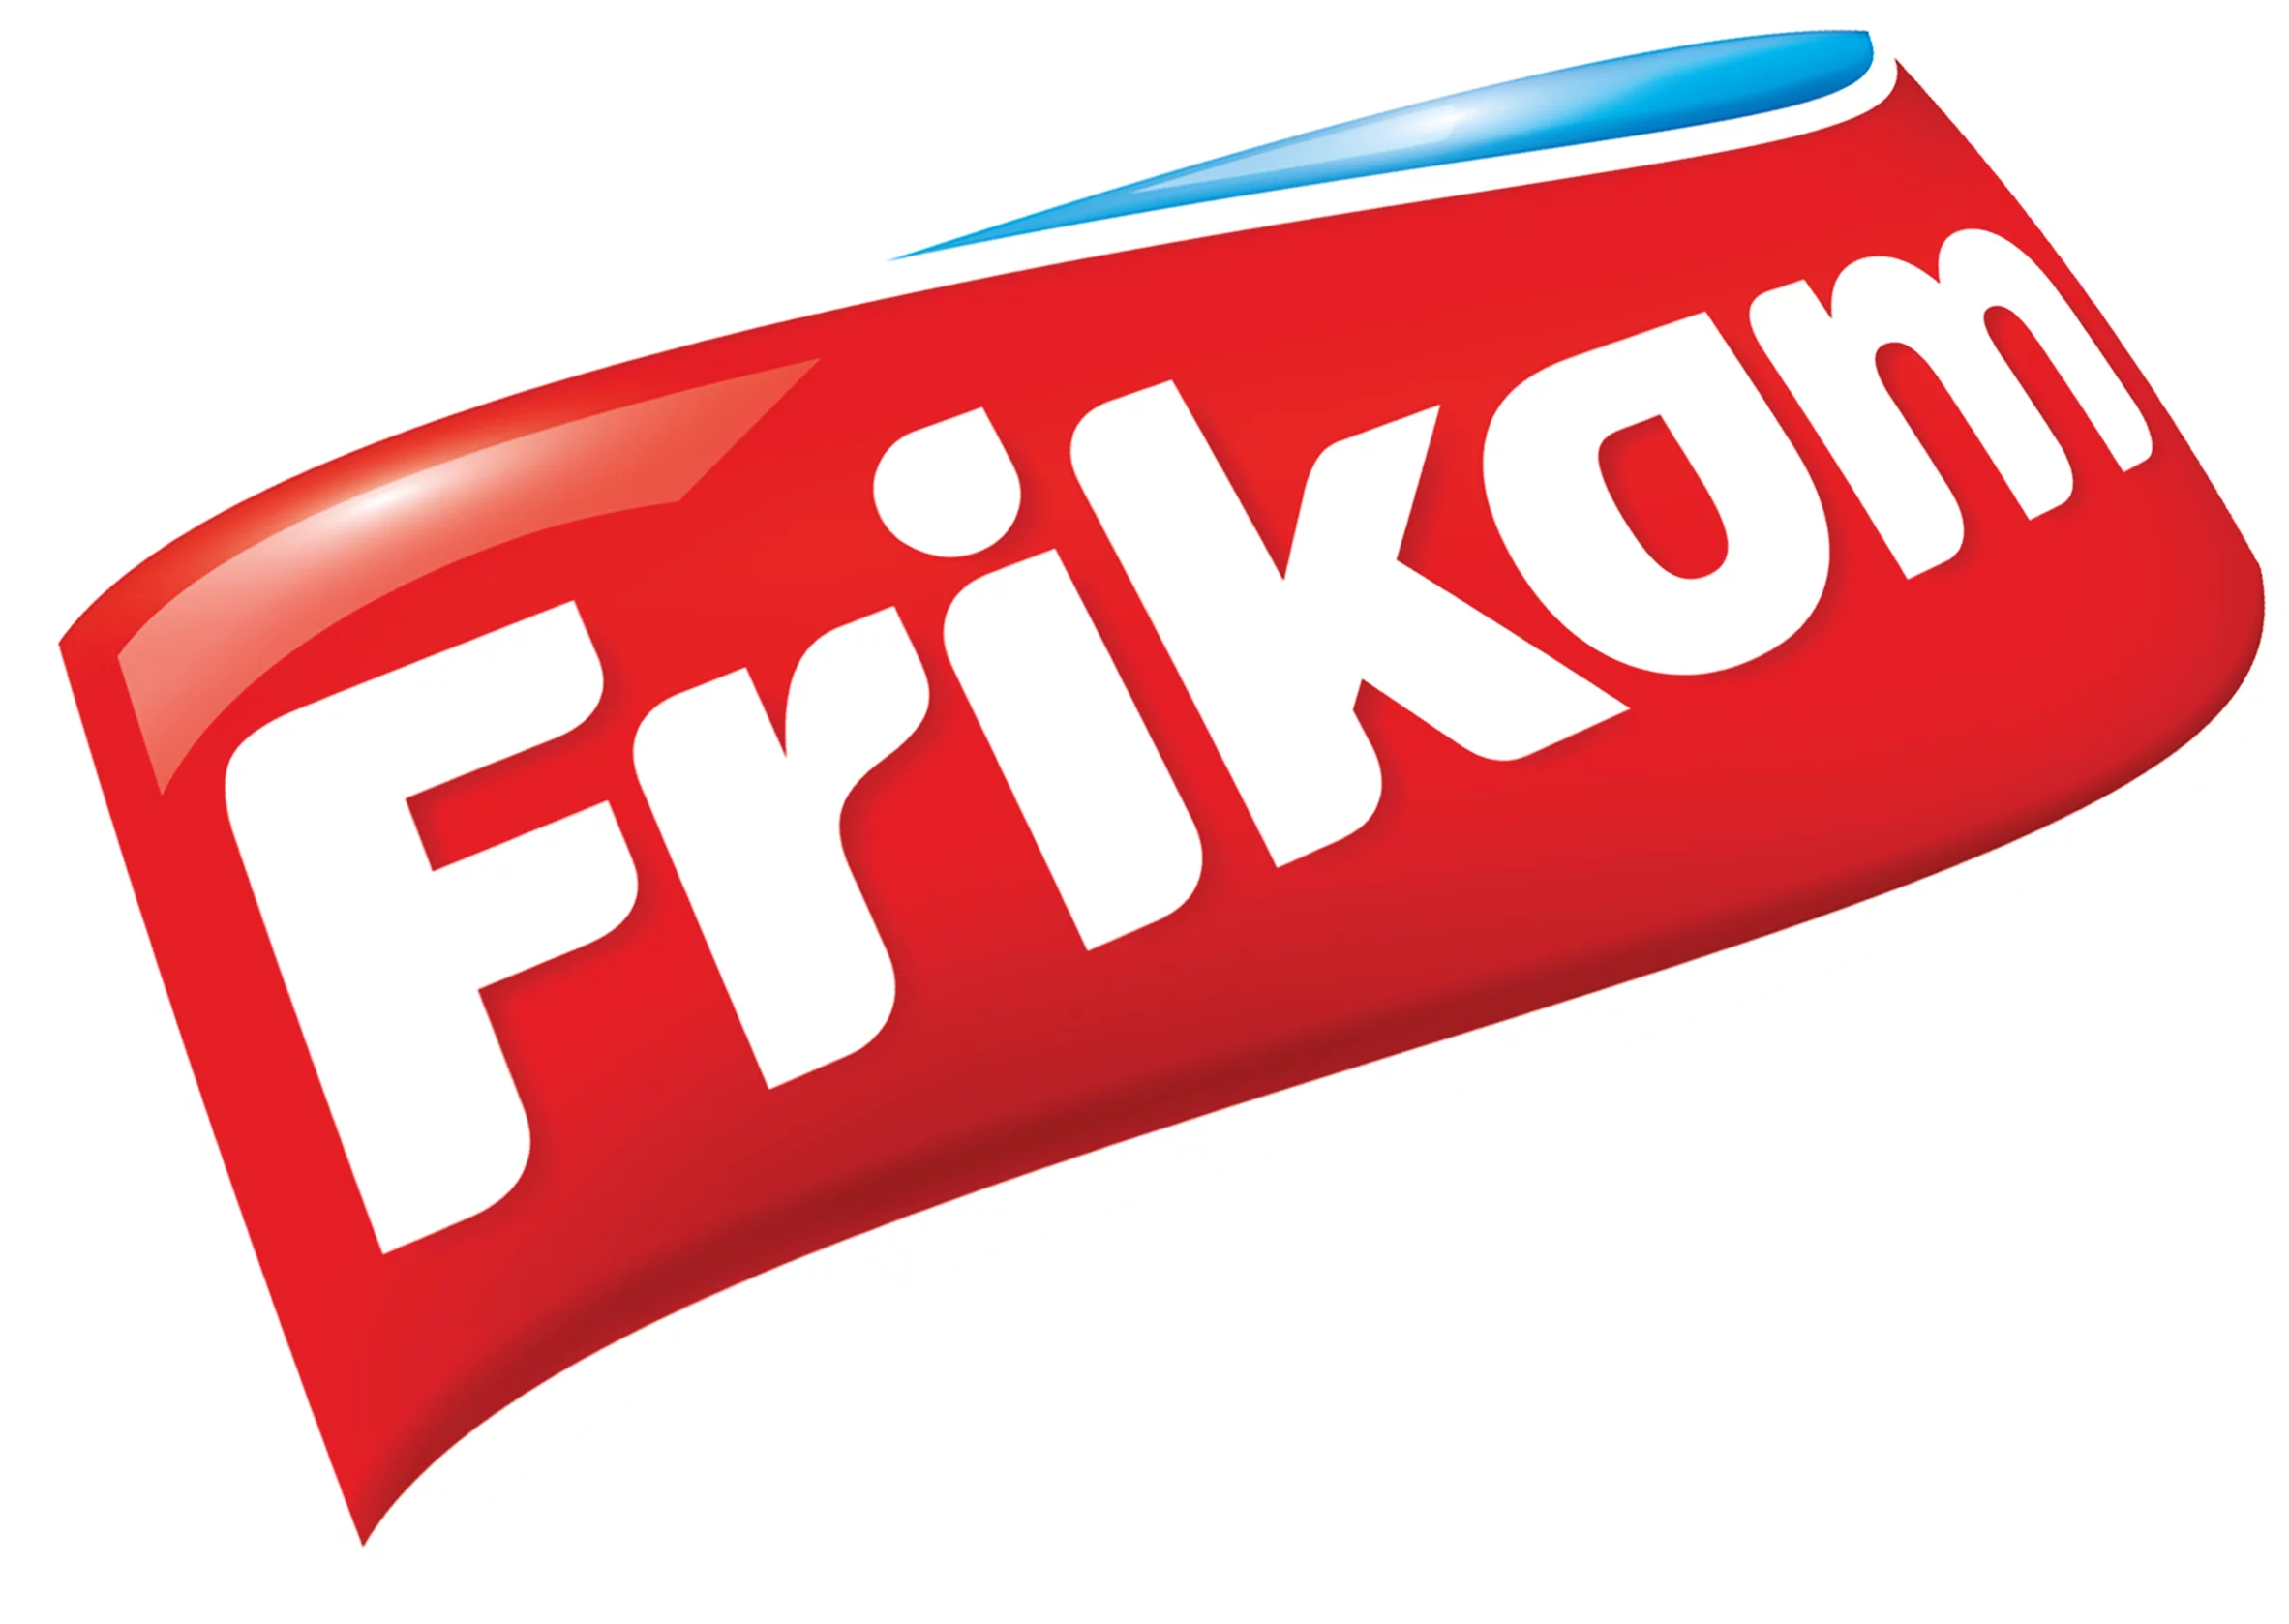 Frikom Logo